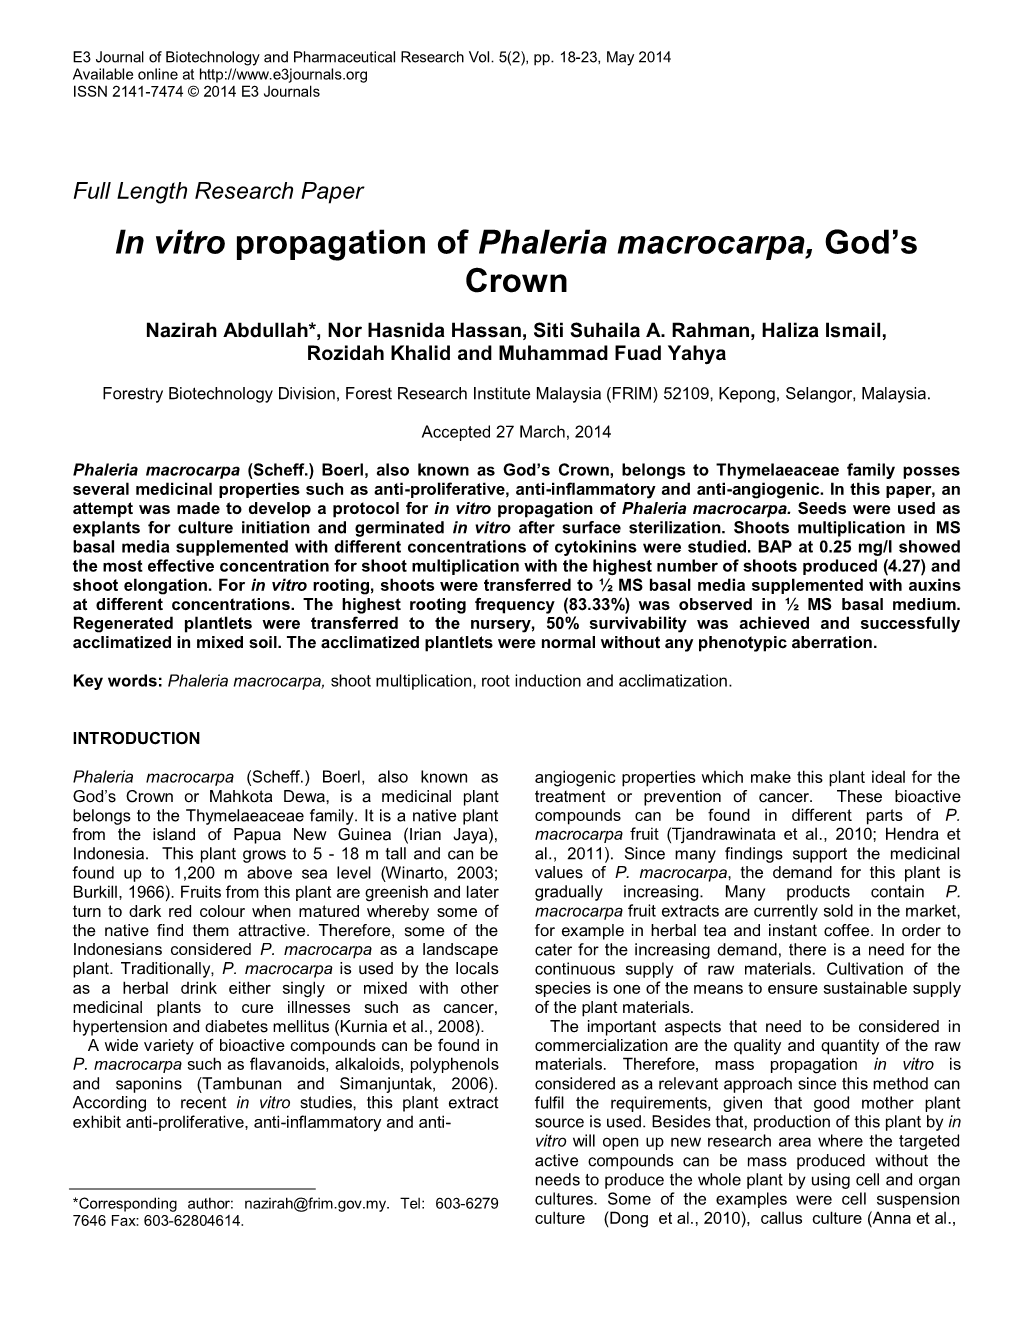 Micropropagation of Phaleria Macrocarpa (Mahkota Dewa)